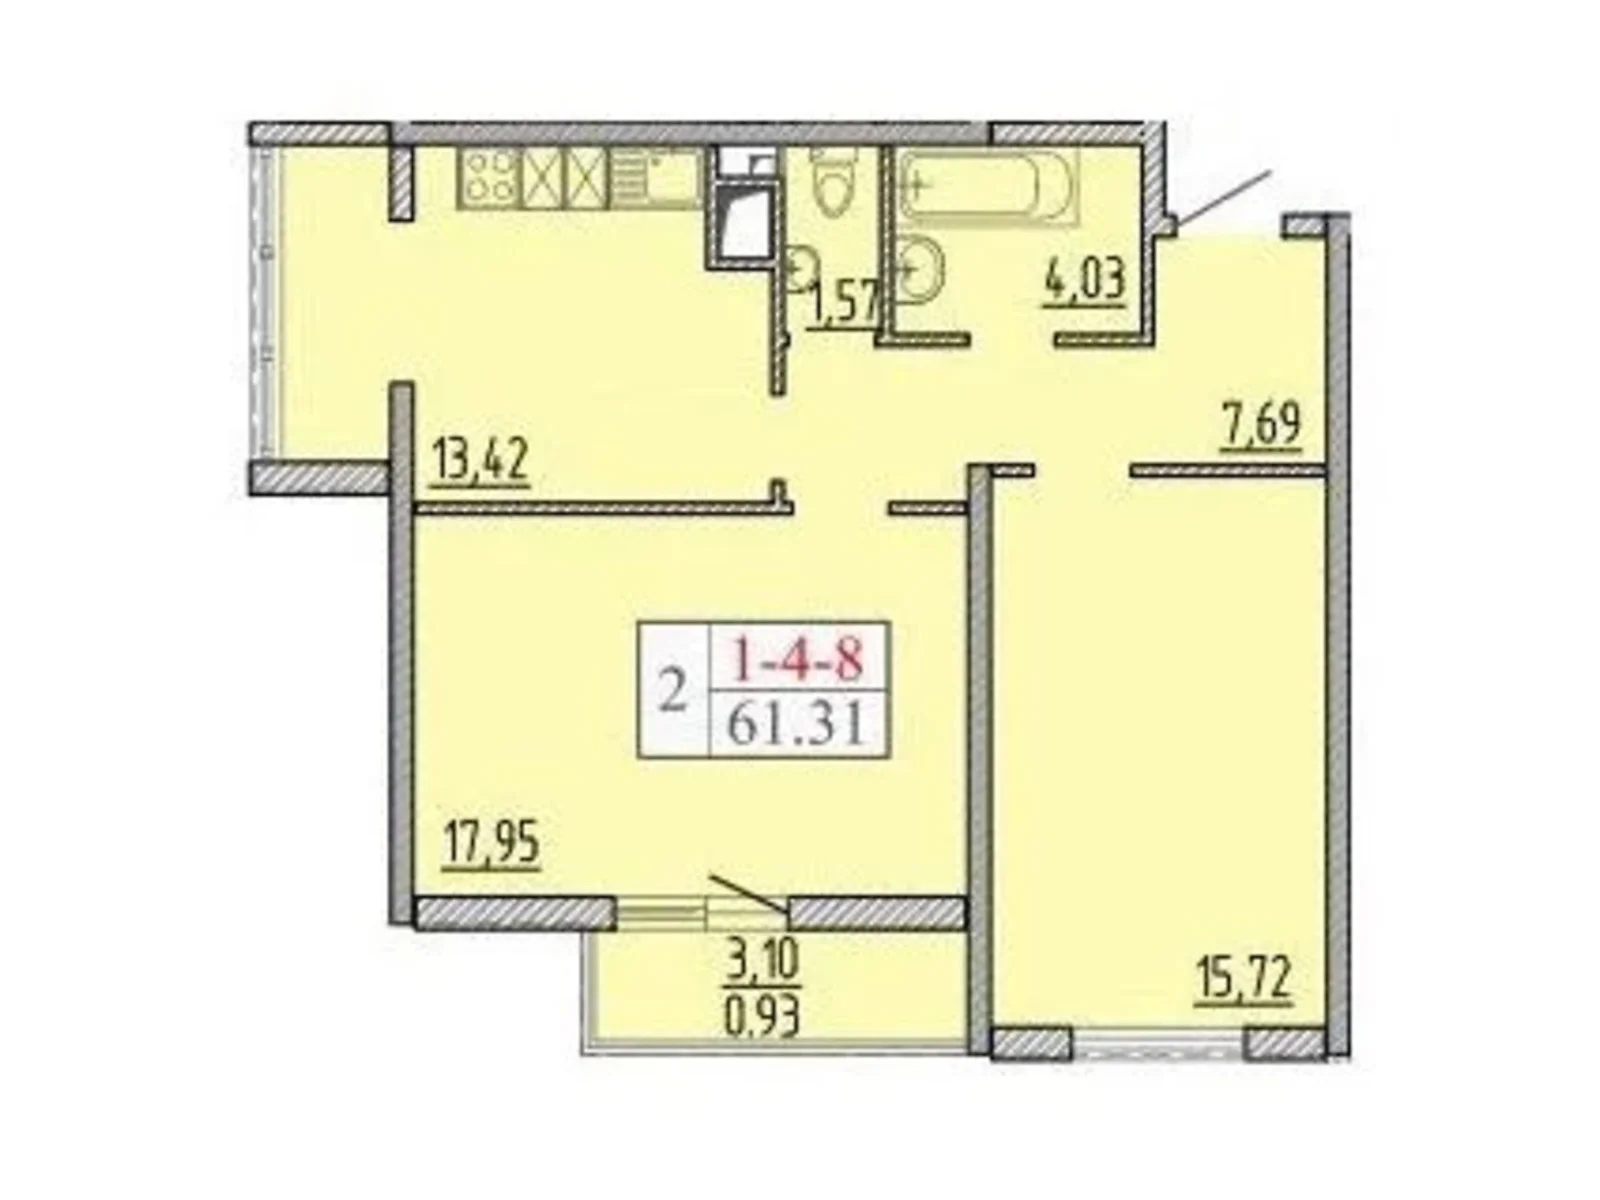 Продається 2-кімнатна квартира 61.31 кв. м у Лиманці, вул. Архітекторська - фото 1